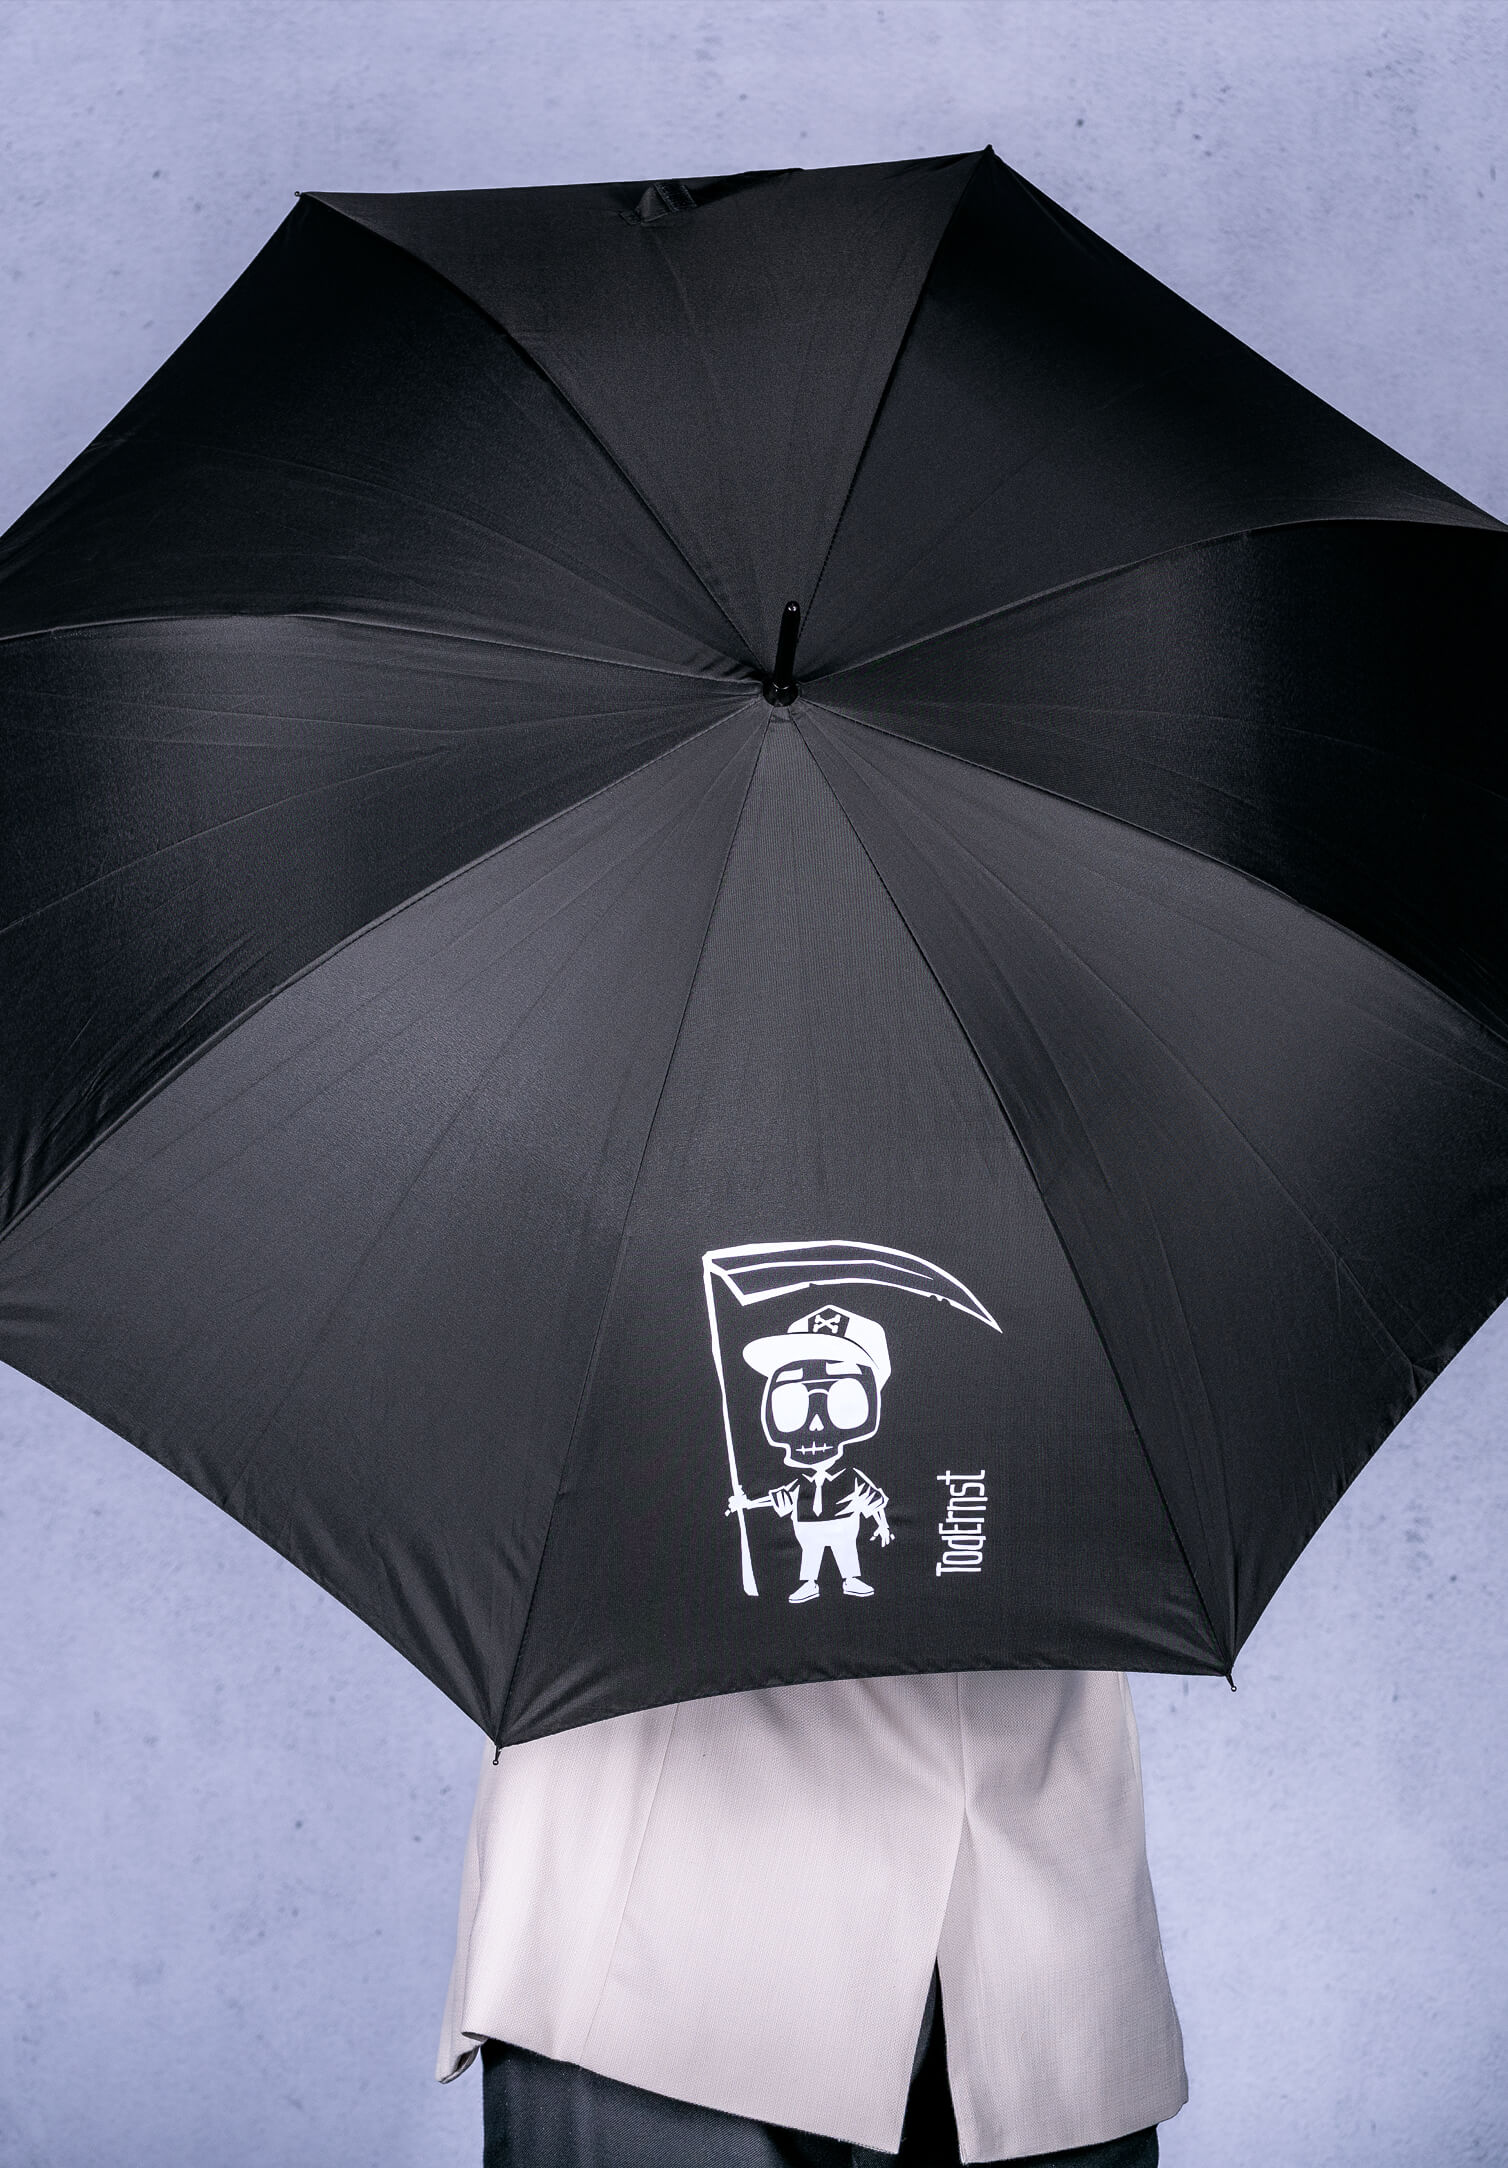 Tod Ernst Regenschirm mit Öffnungsautomatik, Ø 106cm, schwarz